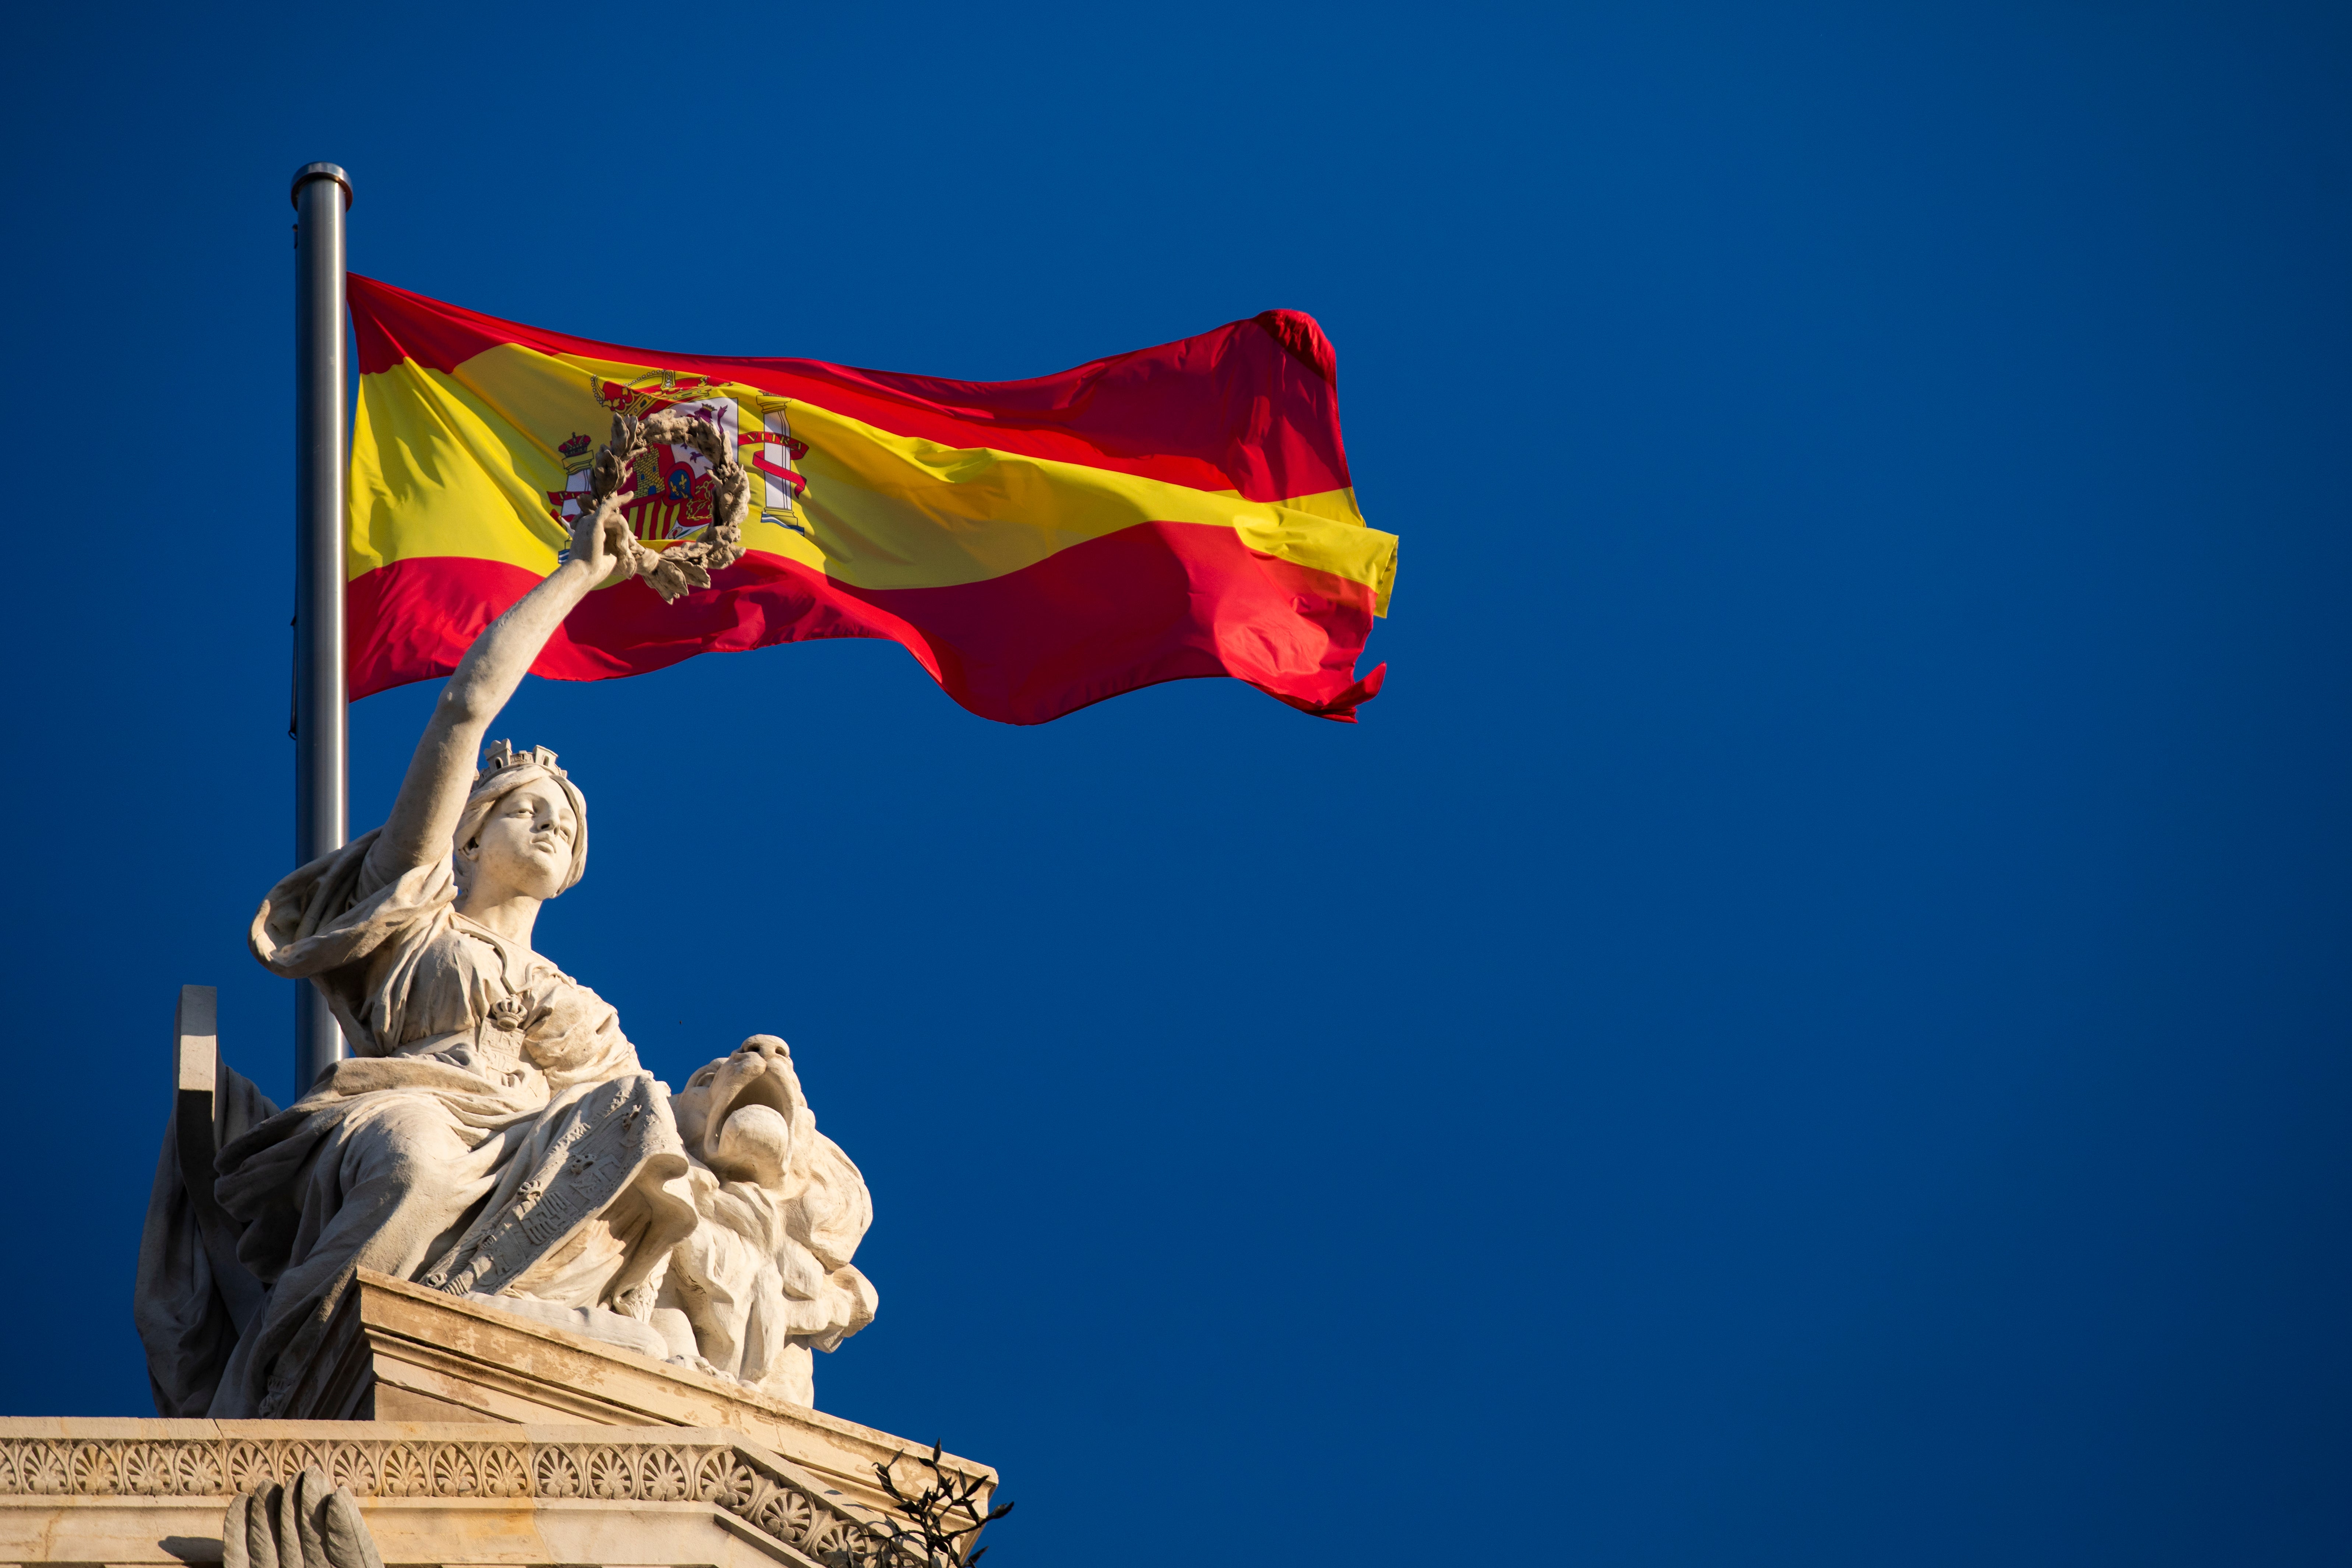 La bandera de España - Historia de la bandera de España